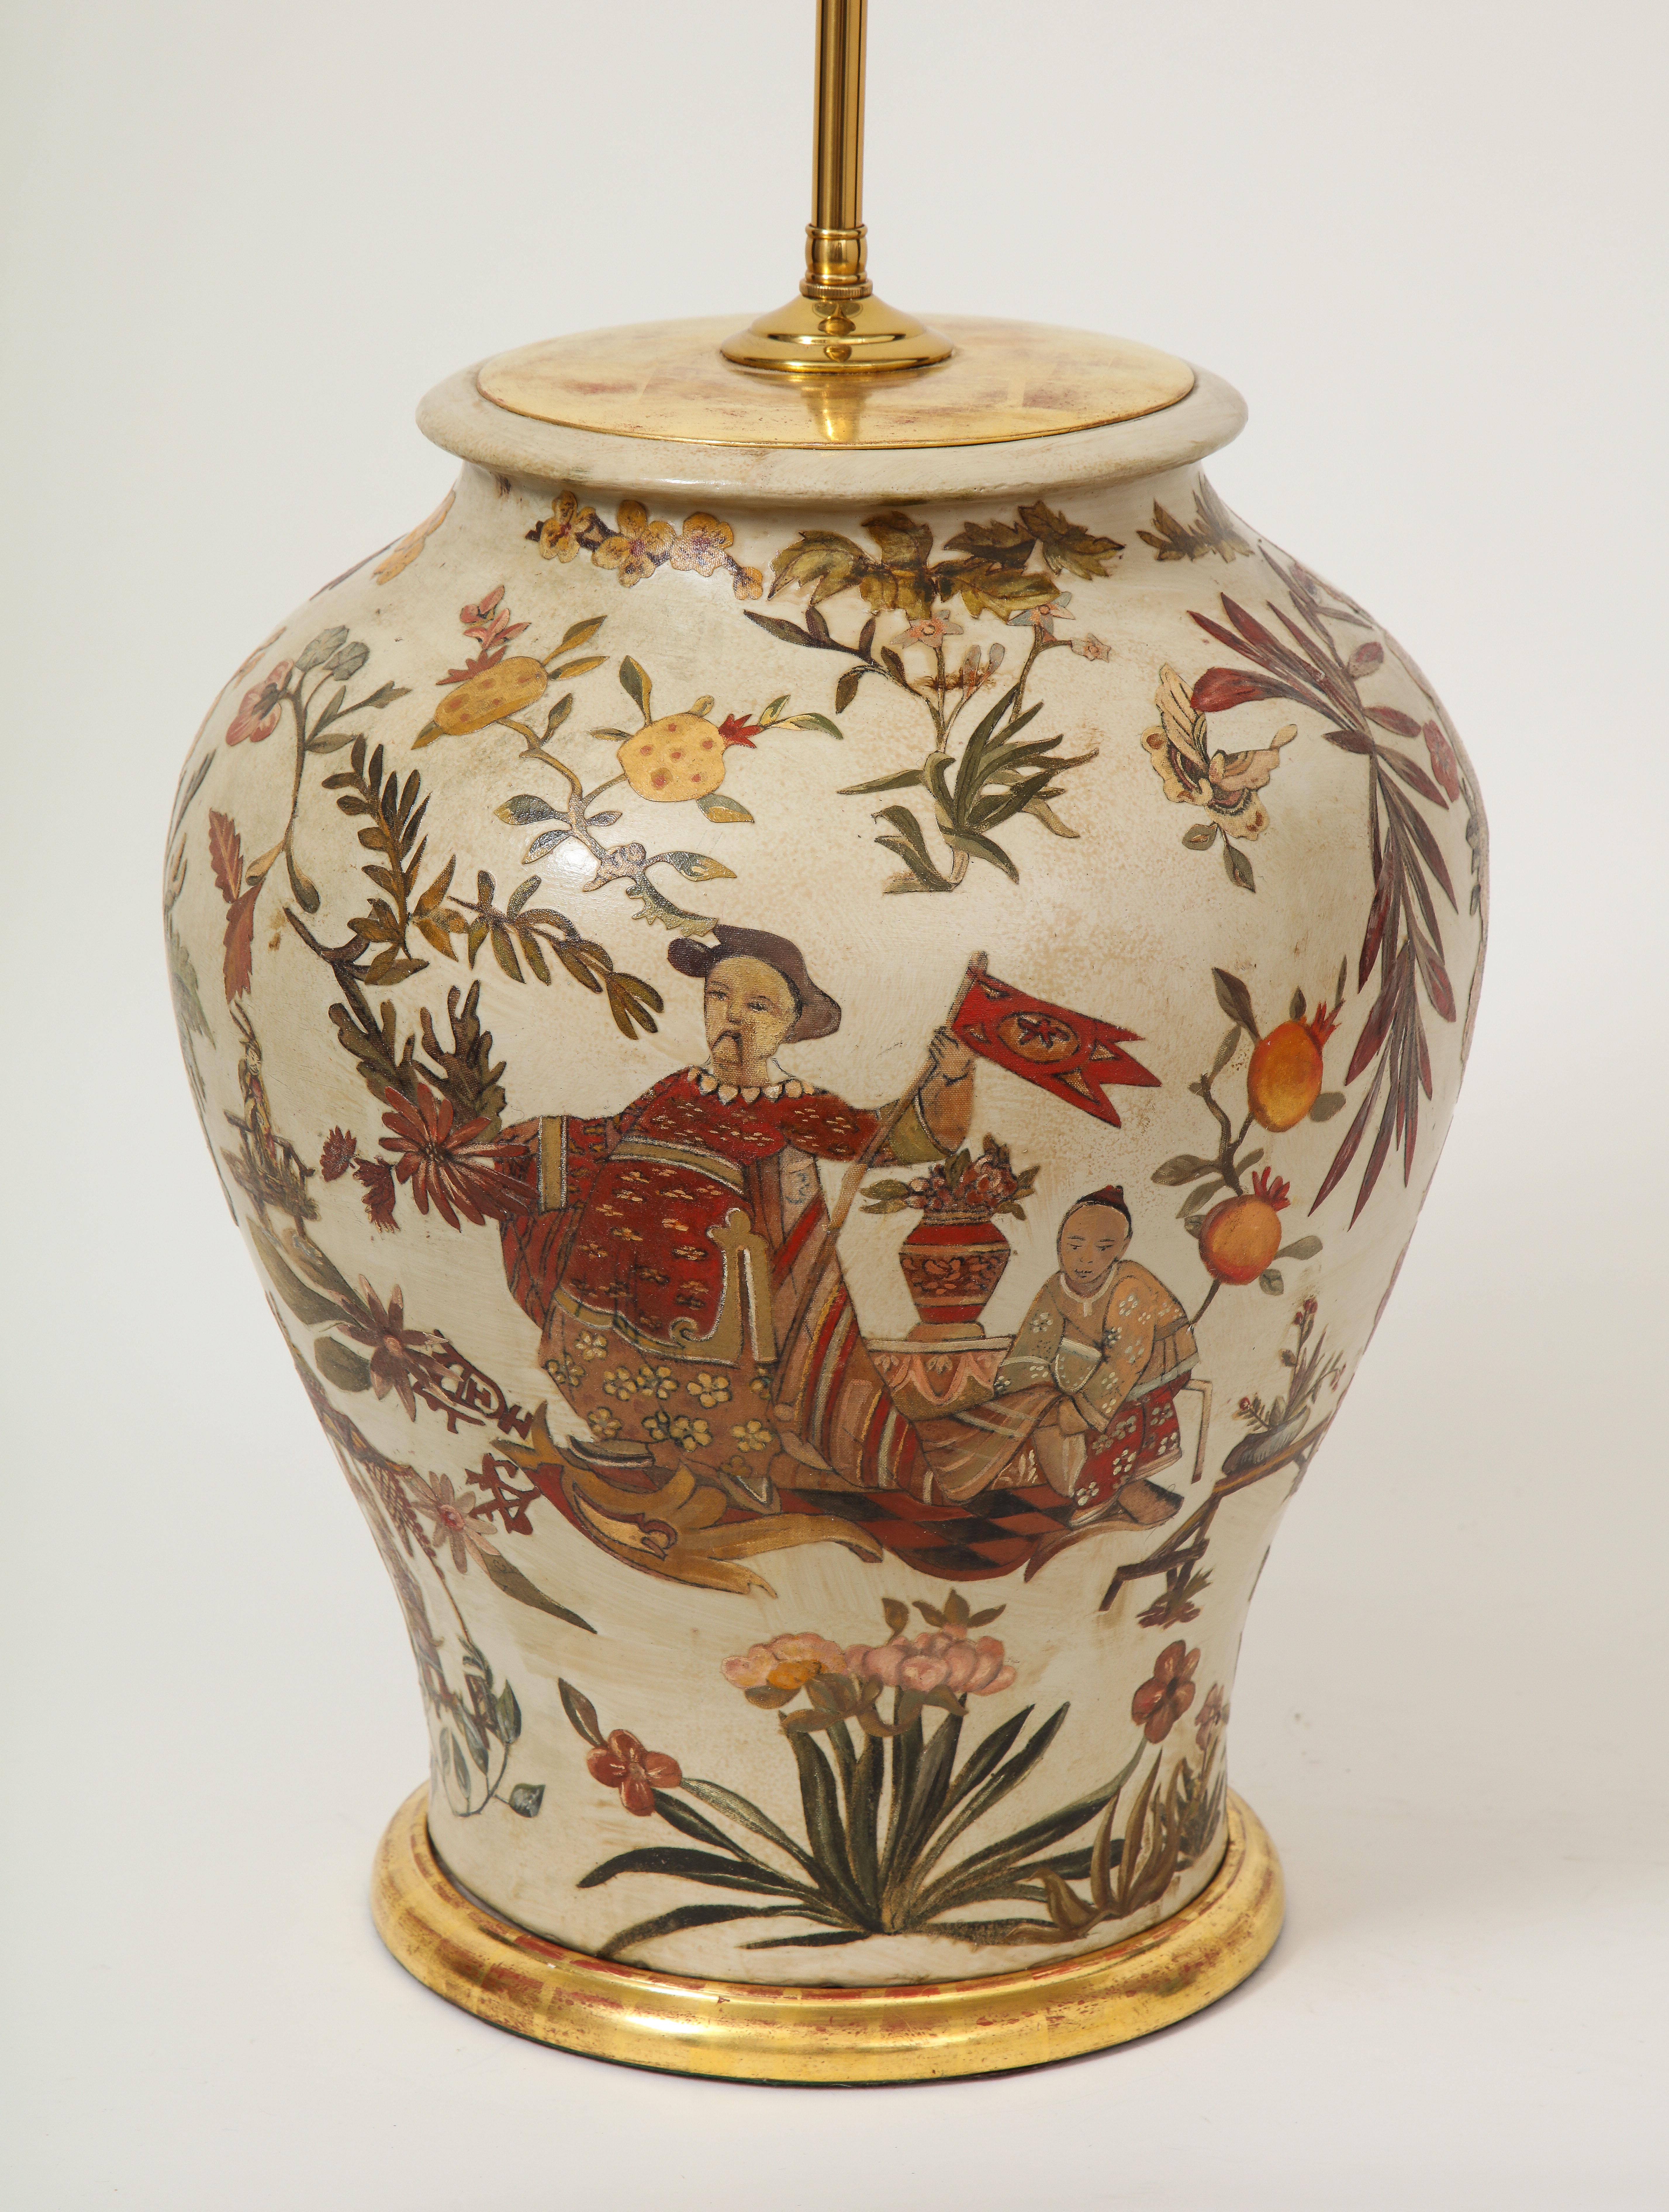 Ce vase de forme balustre en terre cuite est orné d'une décoration de type chinoiserie comprenant un personnage de la Cour brandissant une bannière avec un assistant, des kakis, des orchidées, des pivoines et d'autres emblèmes de la bonne fortune